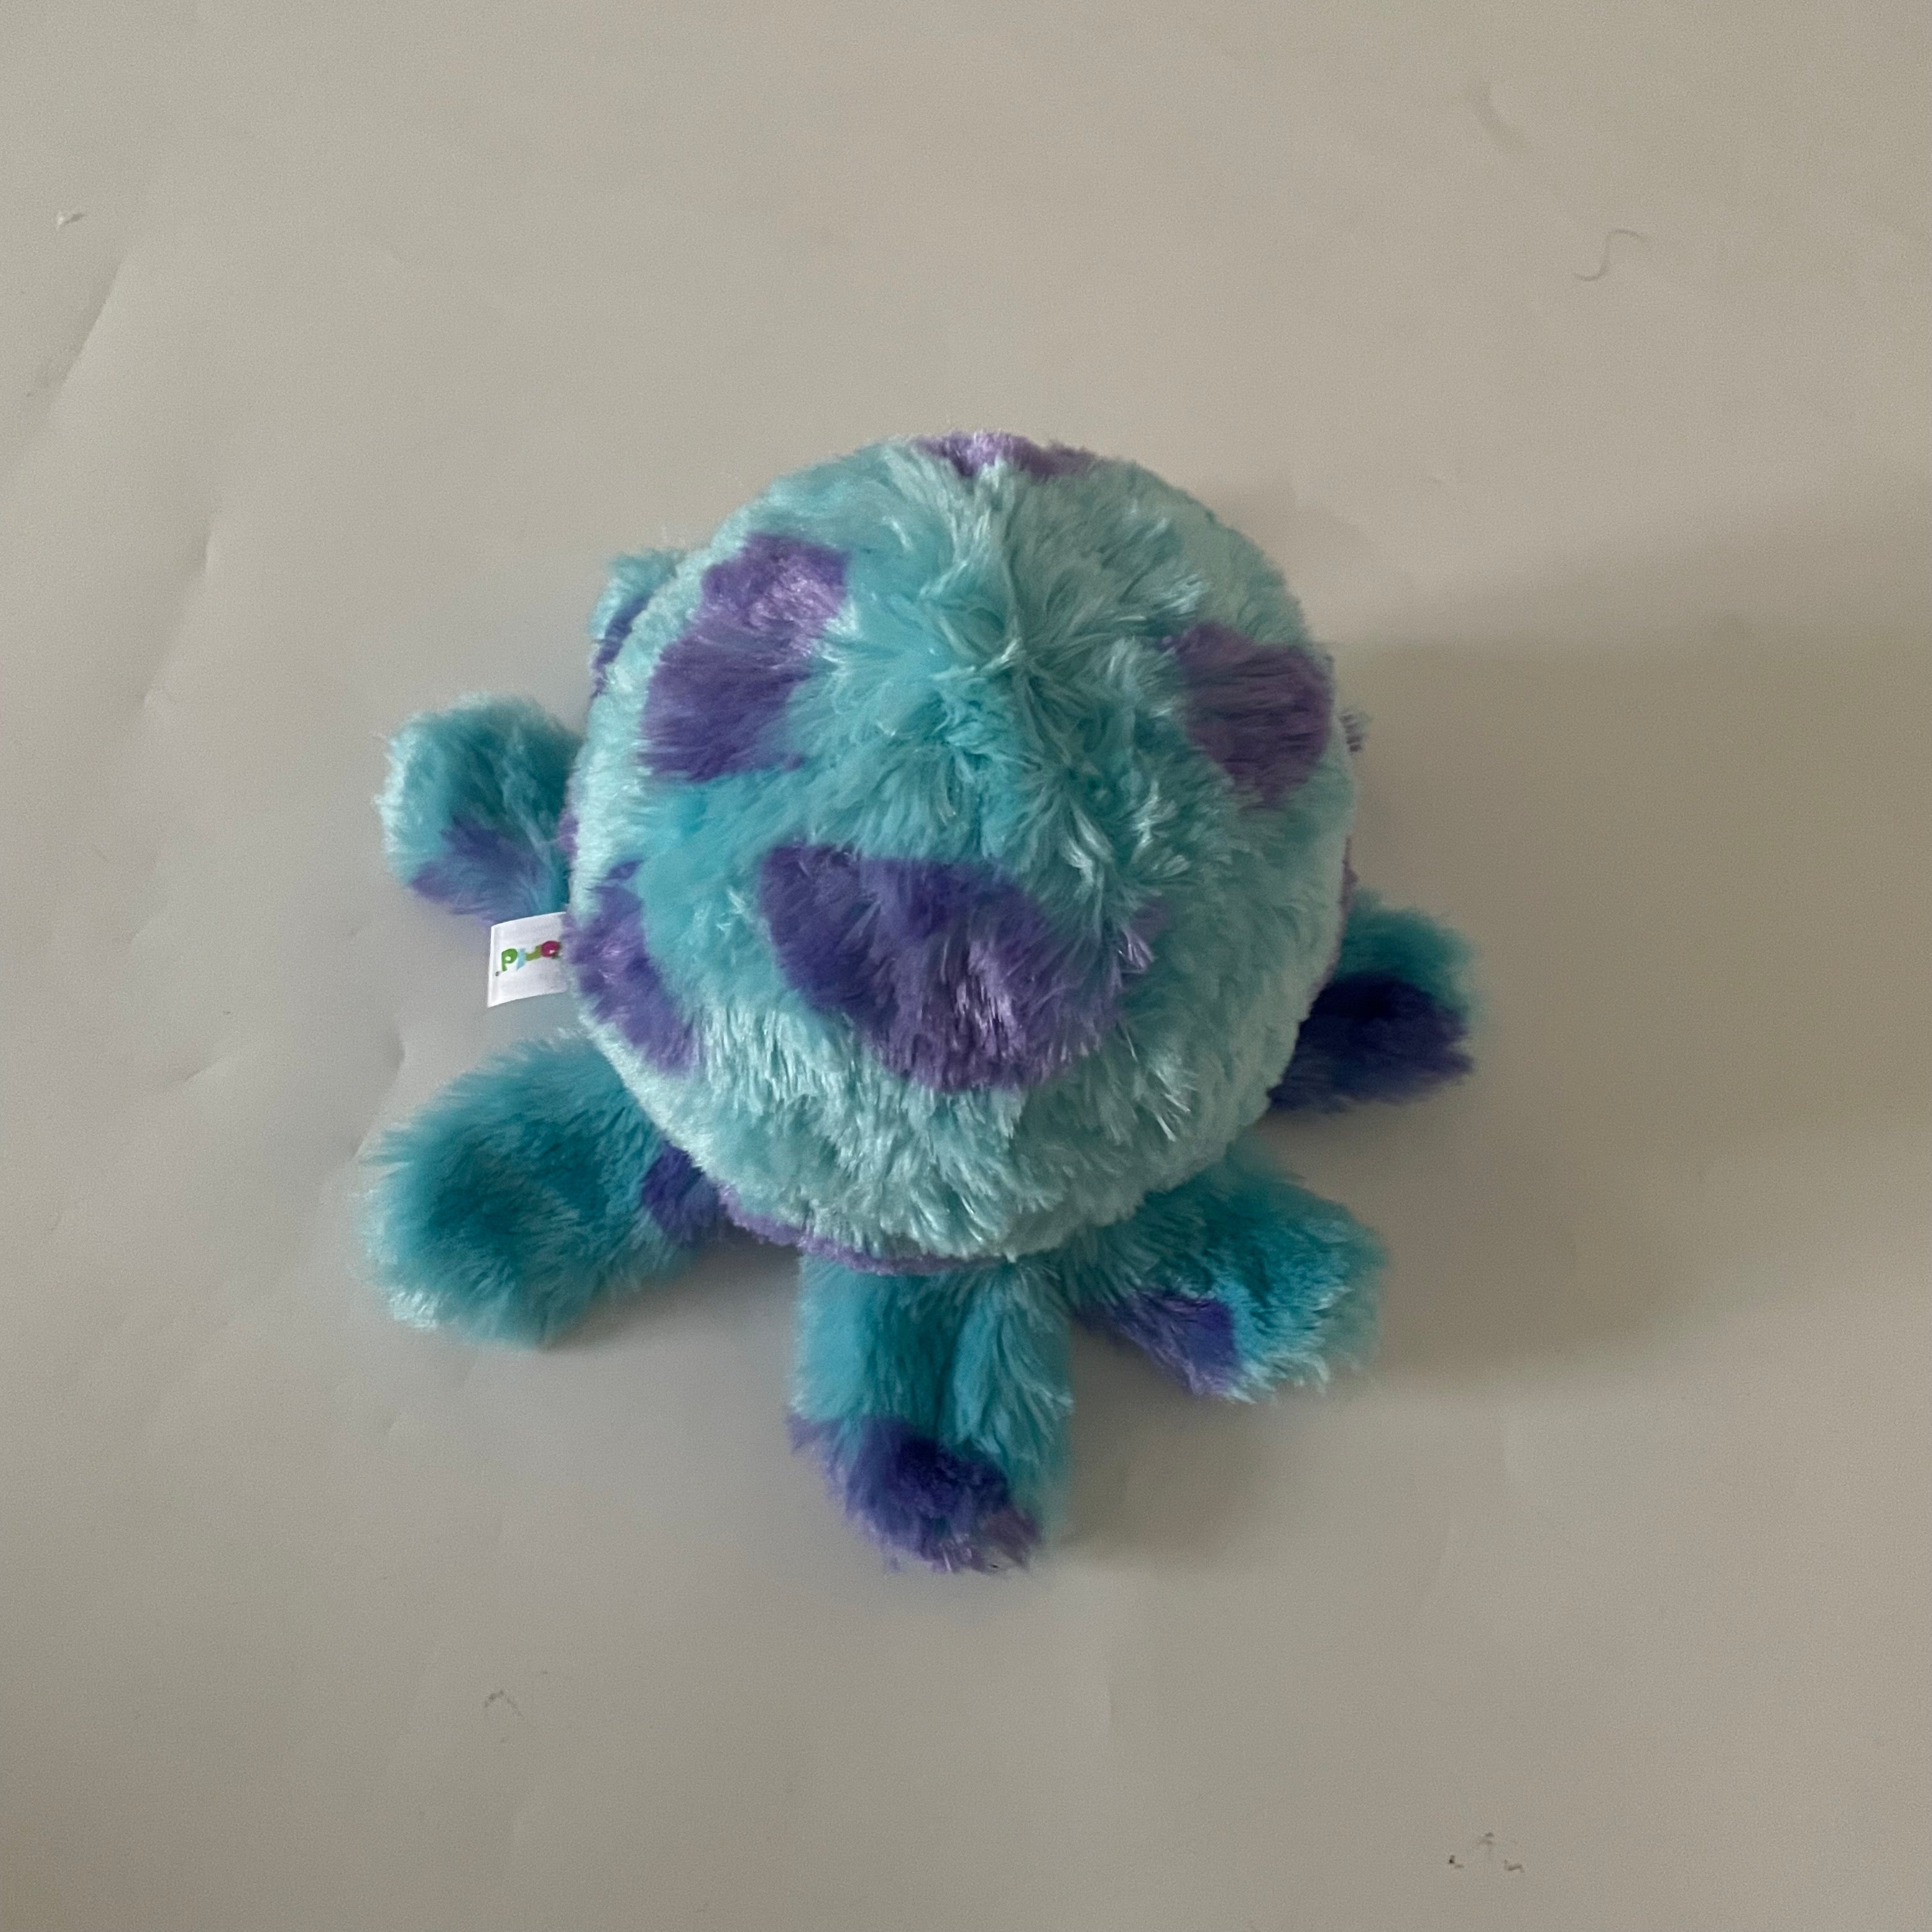 Reversible Octopus Push Bubble Pop Fidget Toy